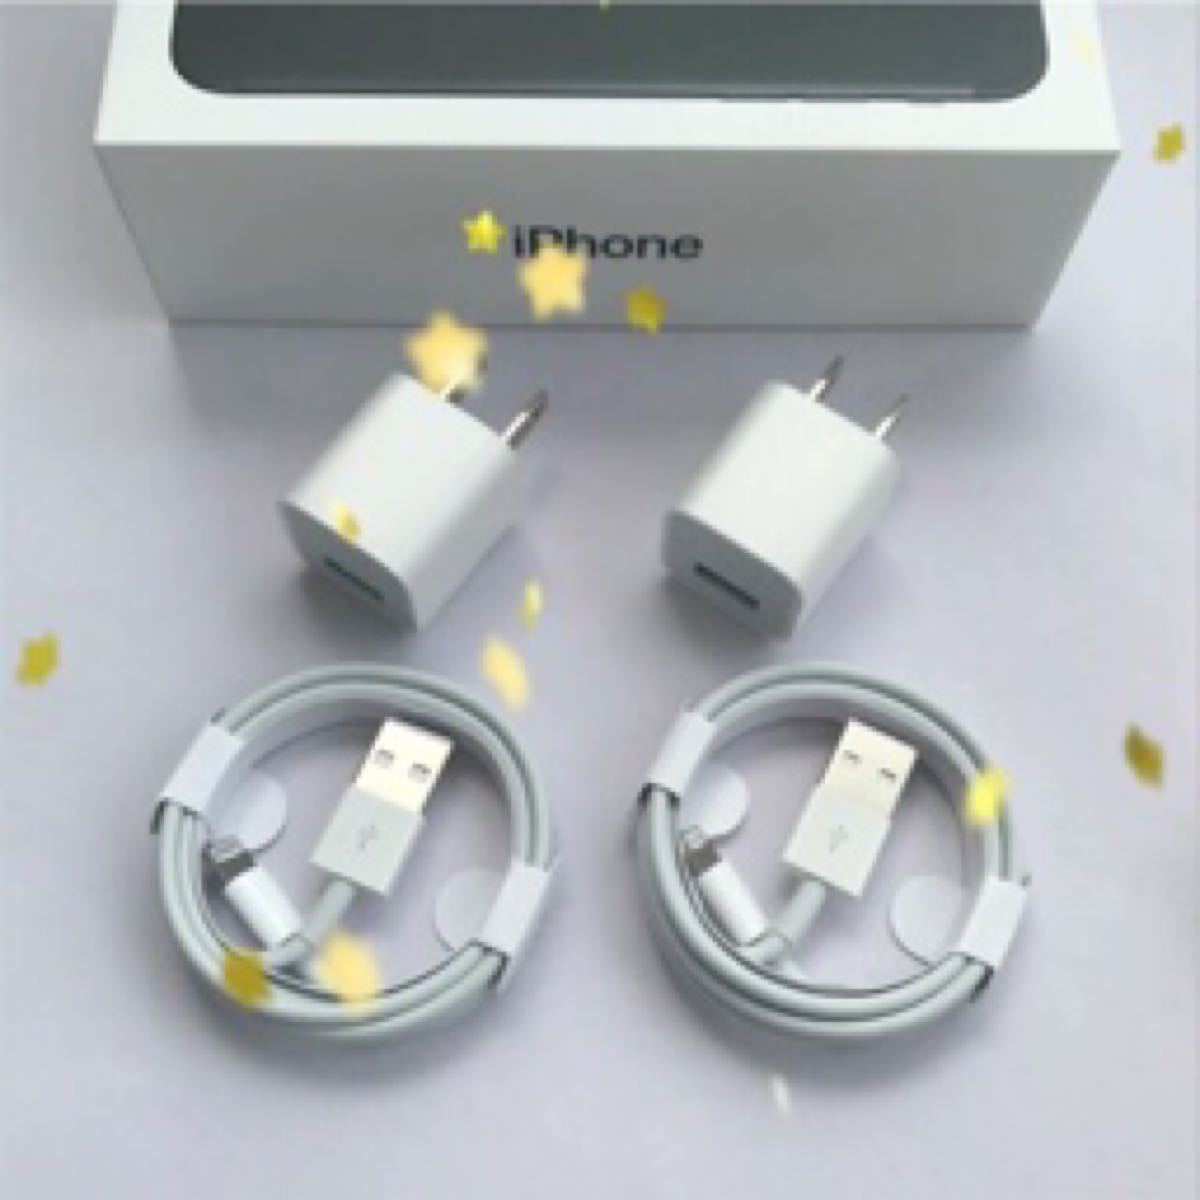 iPhone 充電ケーブル 充電器 コード lightning cable ライトニングケーブル アダプタ コンセント